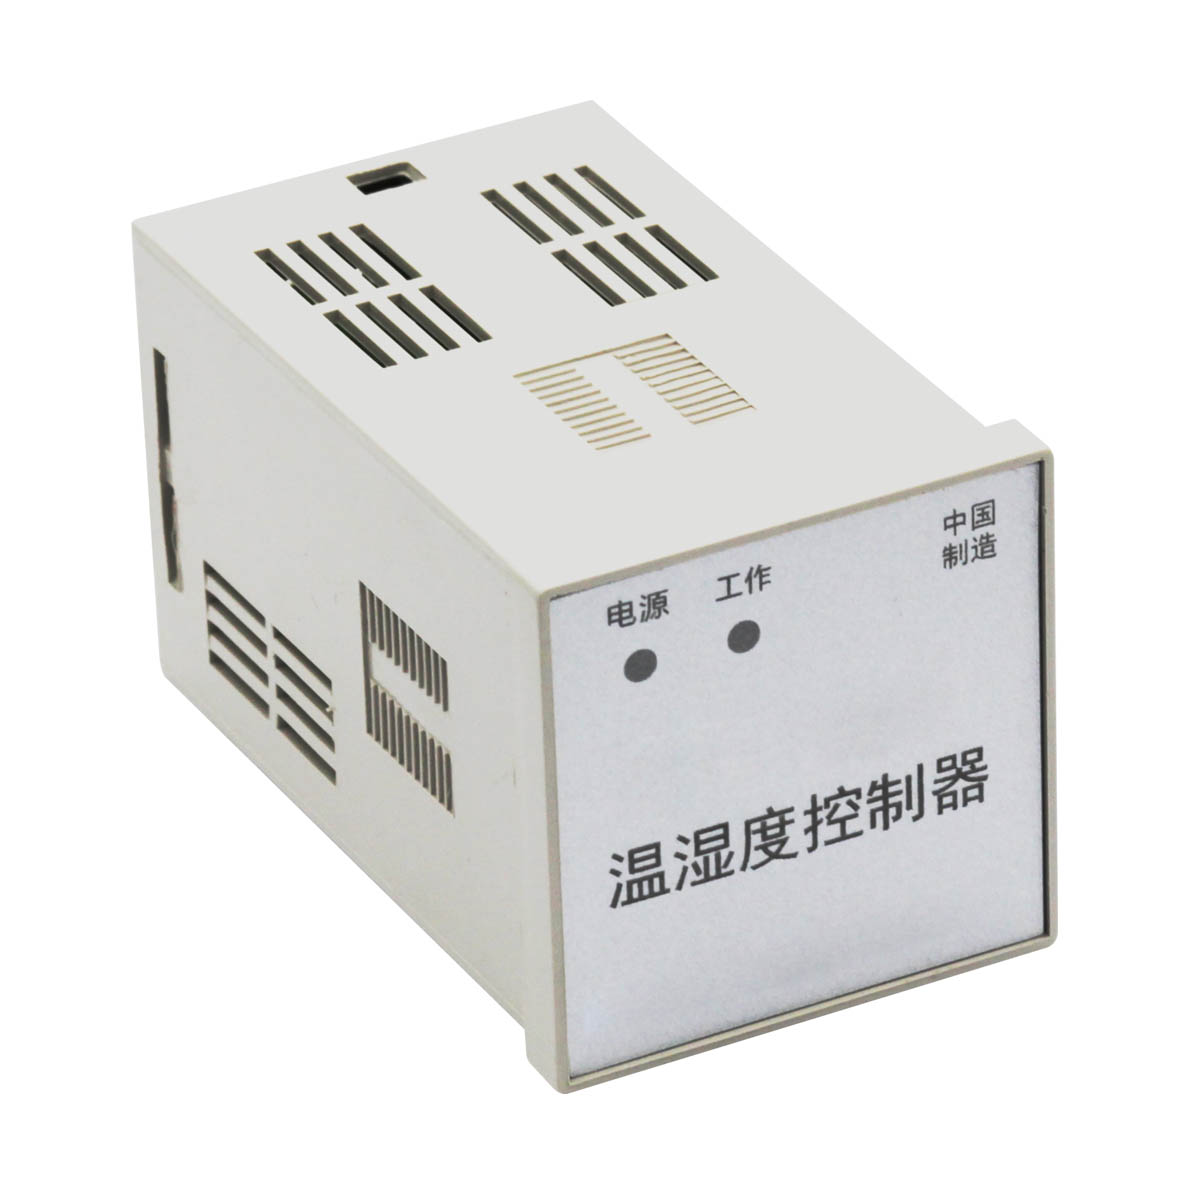 大祥DZJ-01VIAD1C-342电机智能综合监控器/PD204U-9X4G/